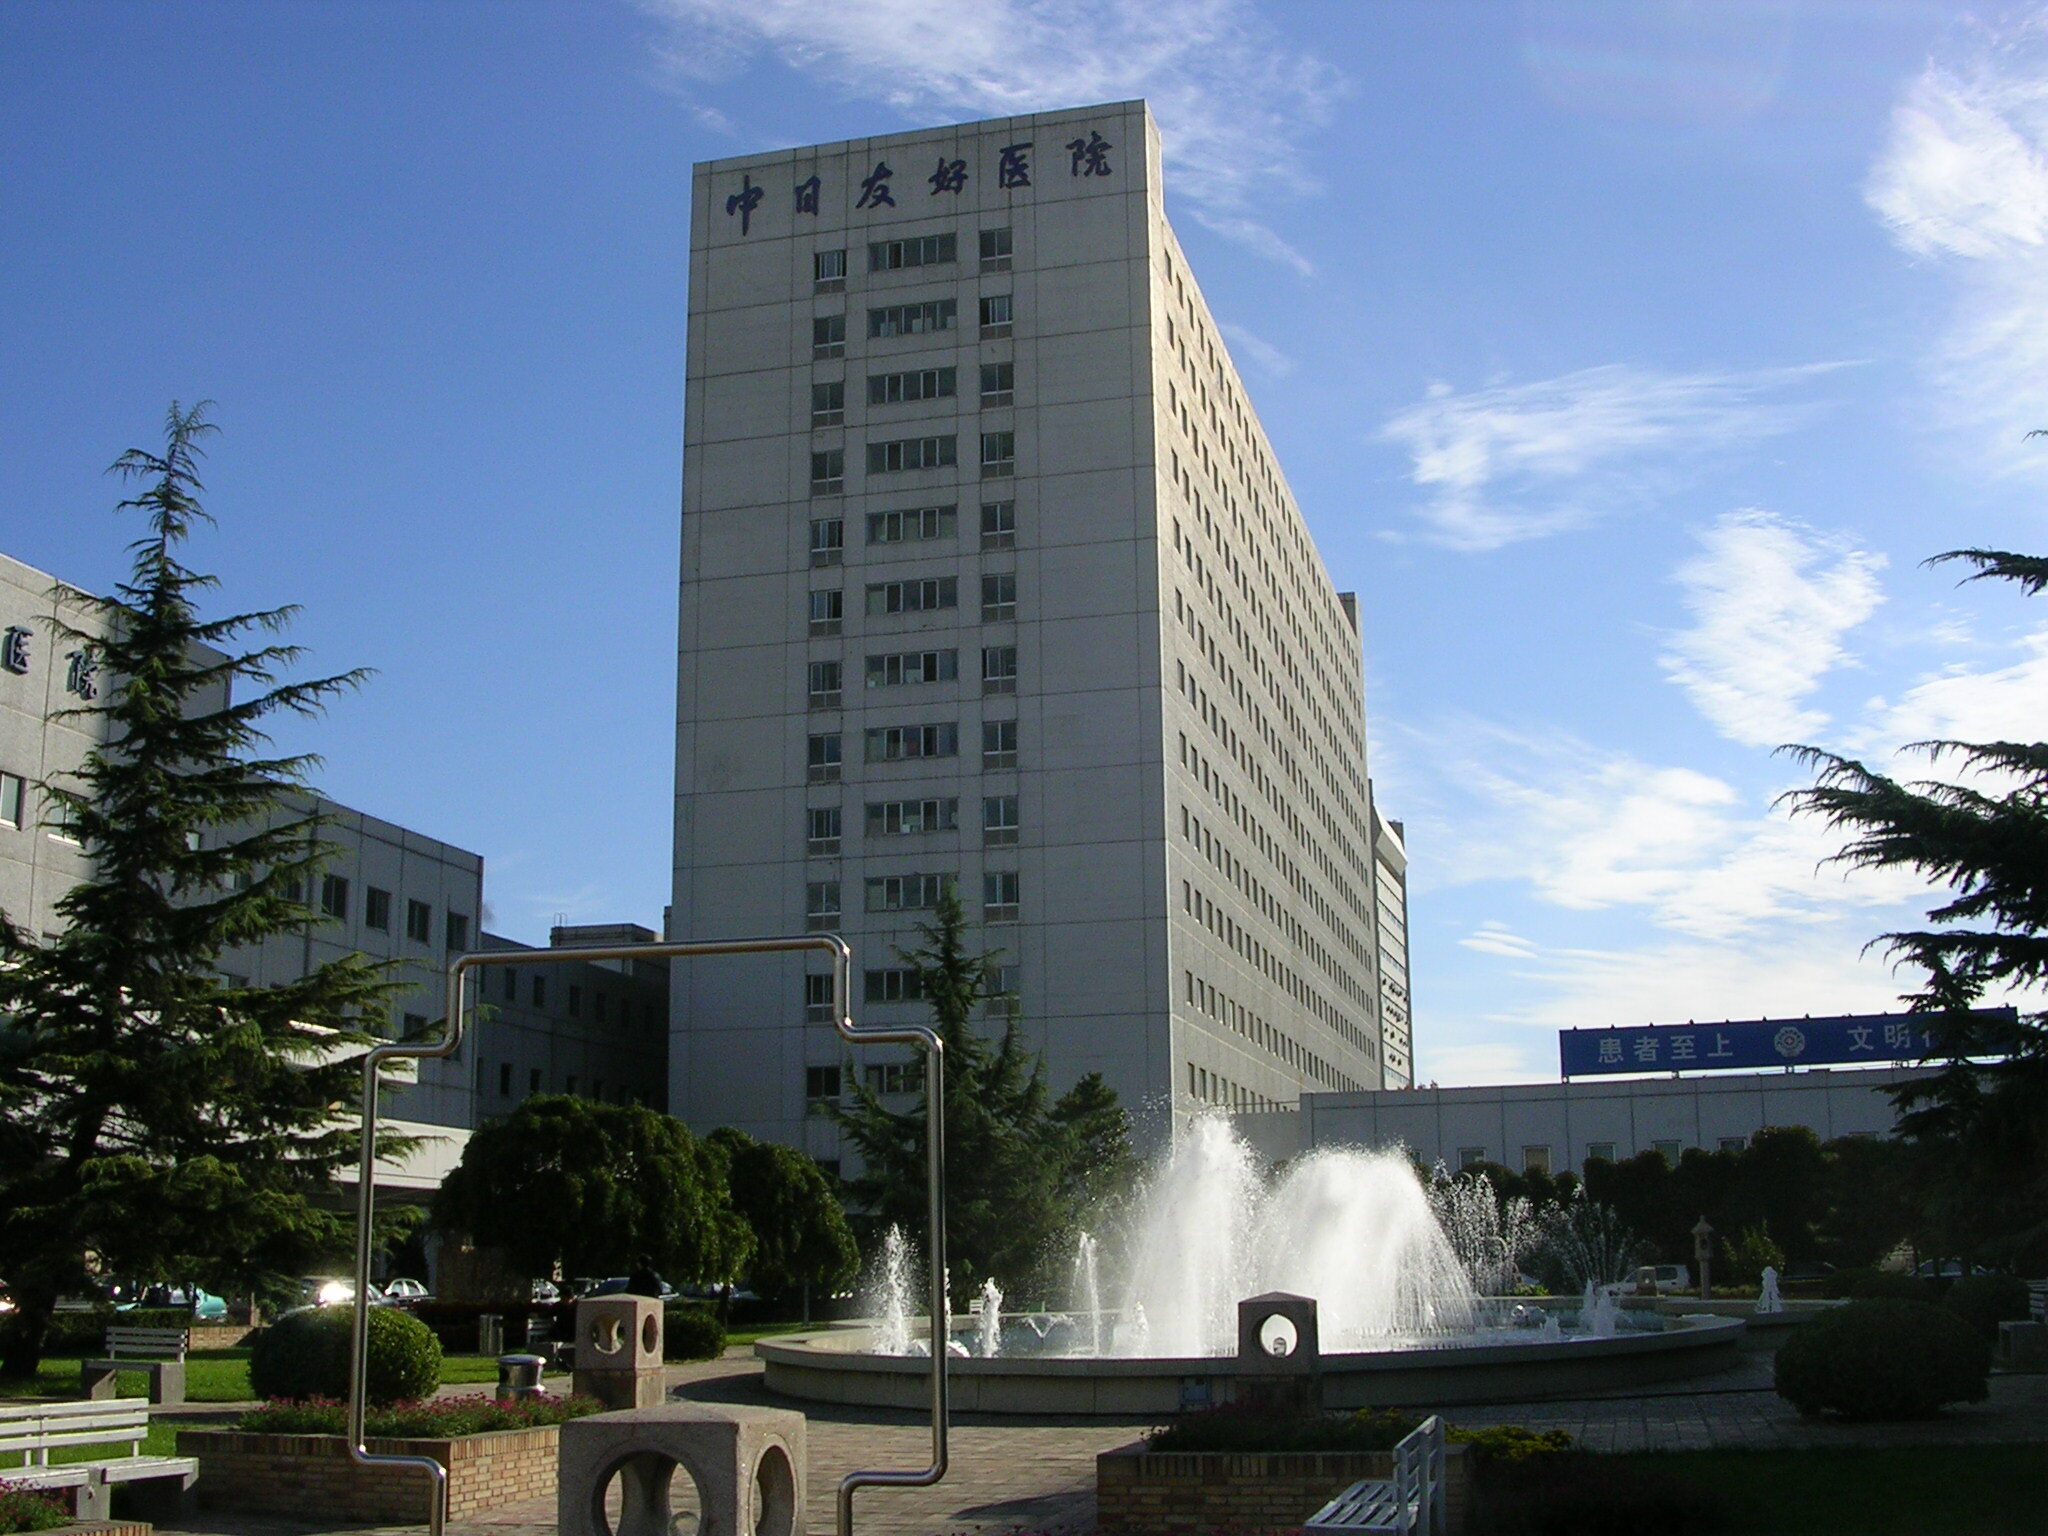 中日友好医院大楼图片